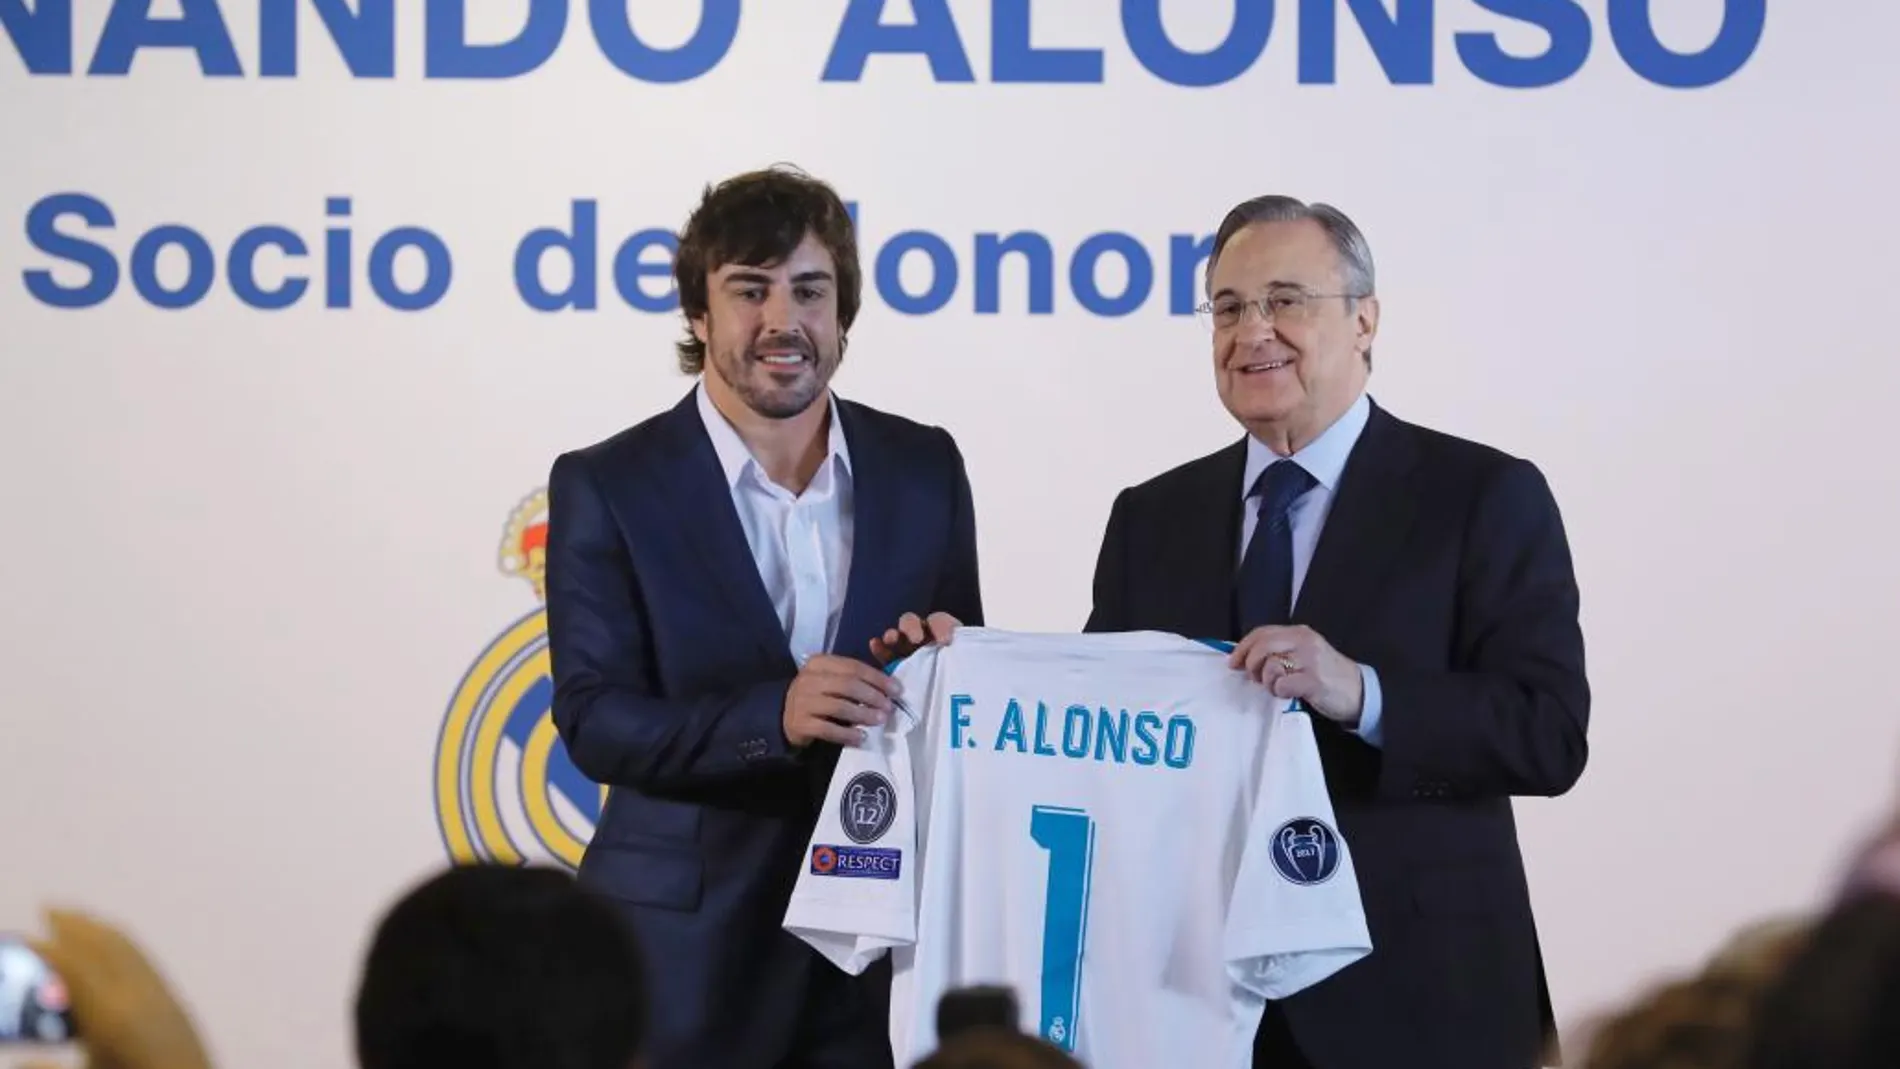 Fernando Alonso,iz., doble campeón del mundo de automovilismo en 2005 y 2006 (con Renault), recibió un multitudinario homenaje en el palco de honor del estadio Santiago Bernabéu donde recibió uin reconocimiento como nuevo Socio de Honor.